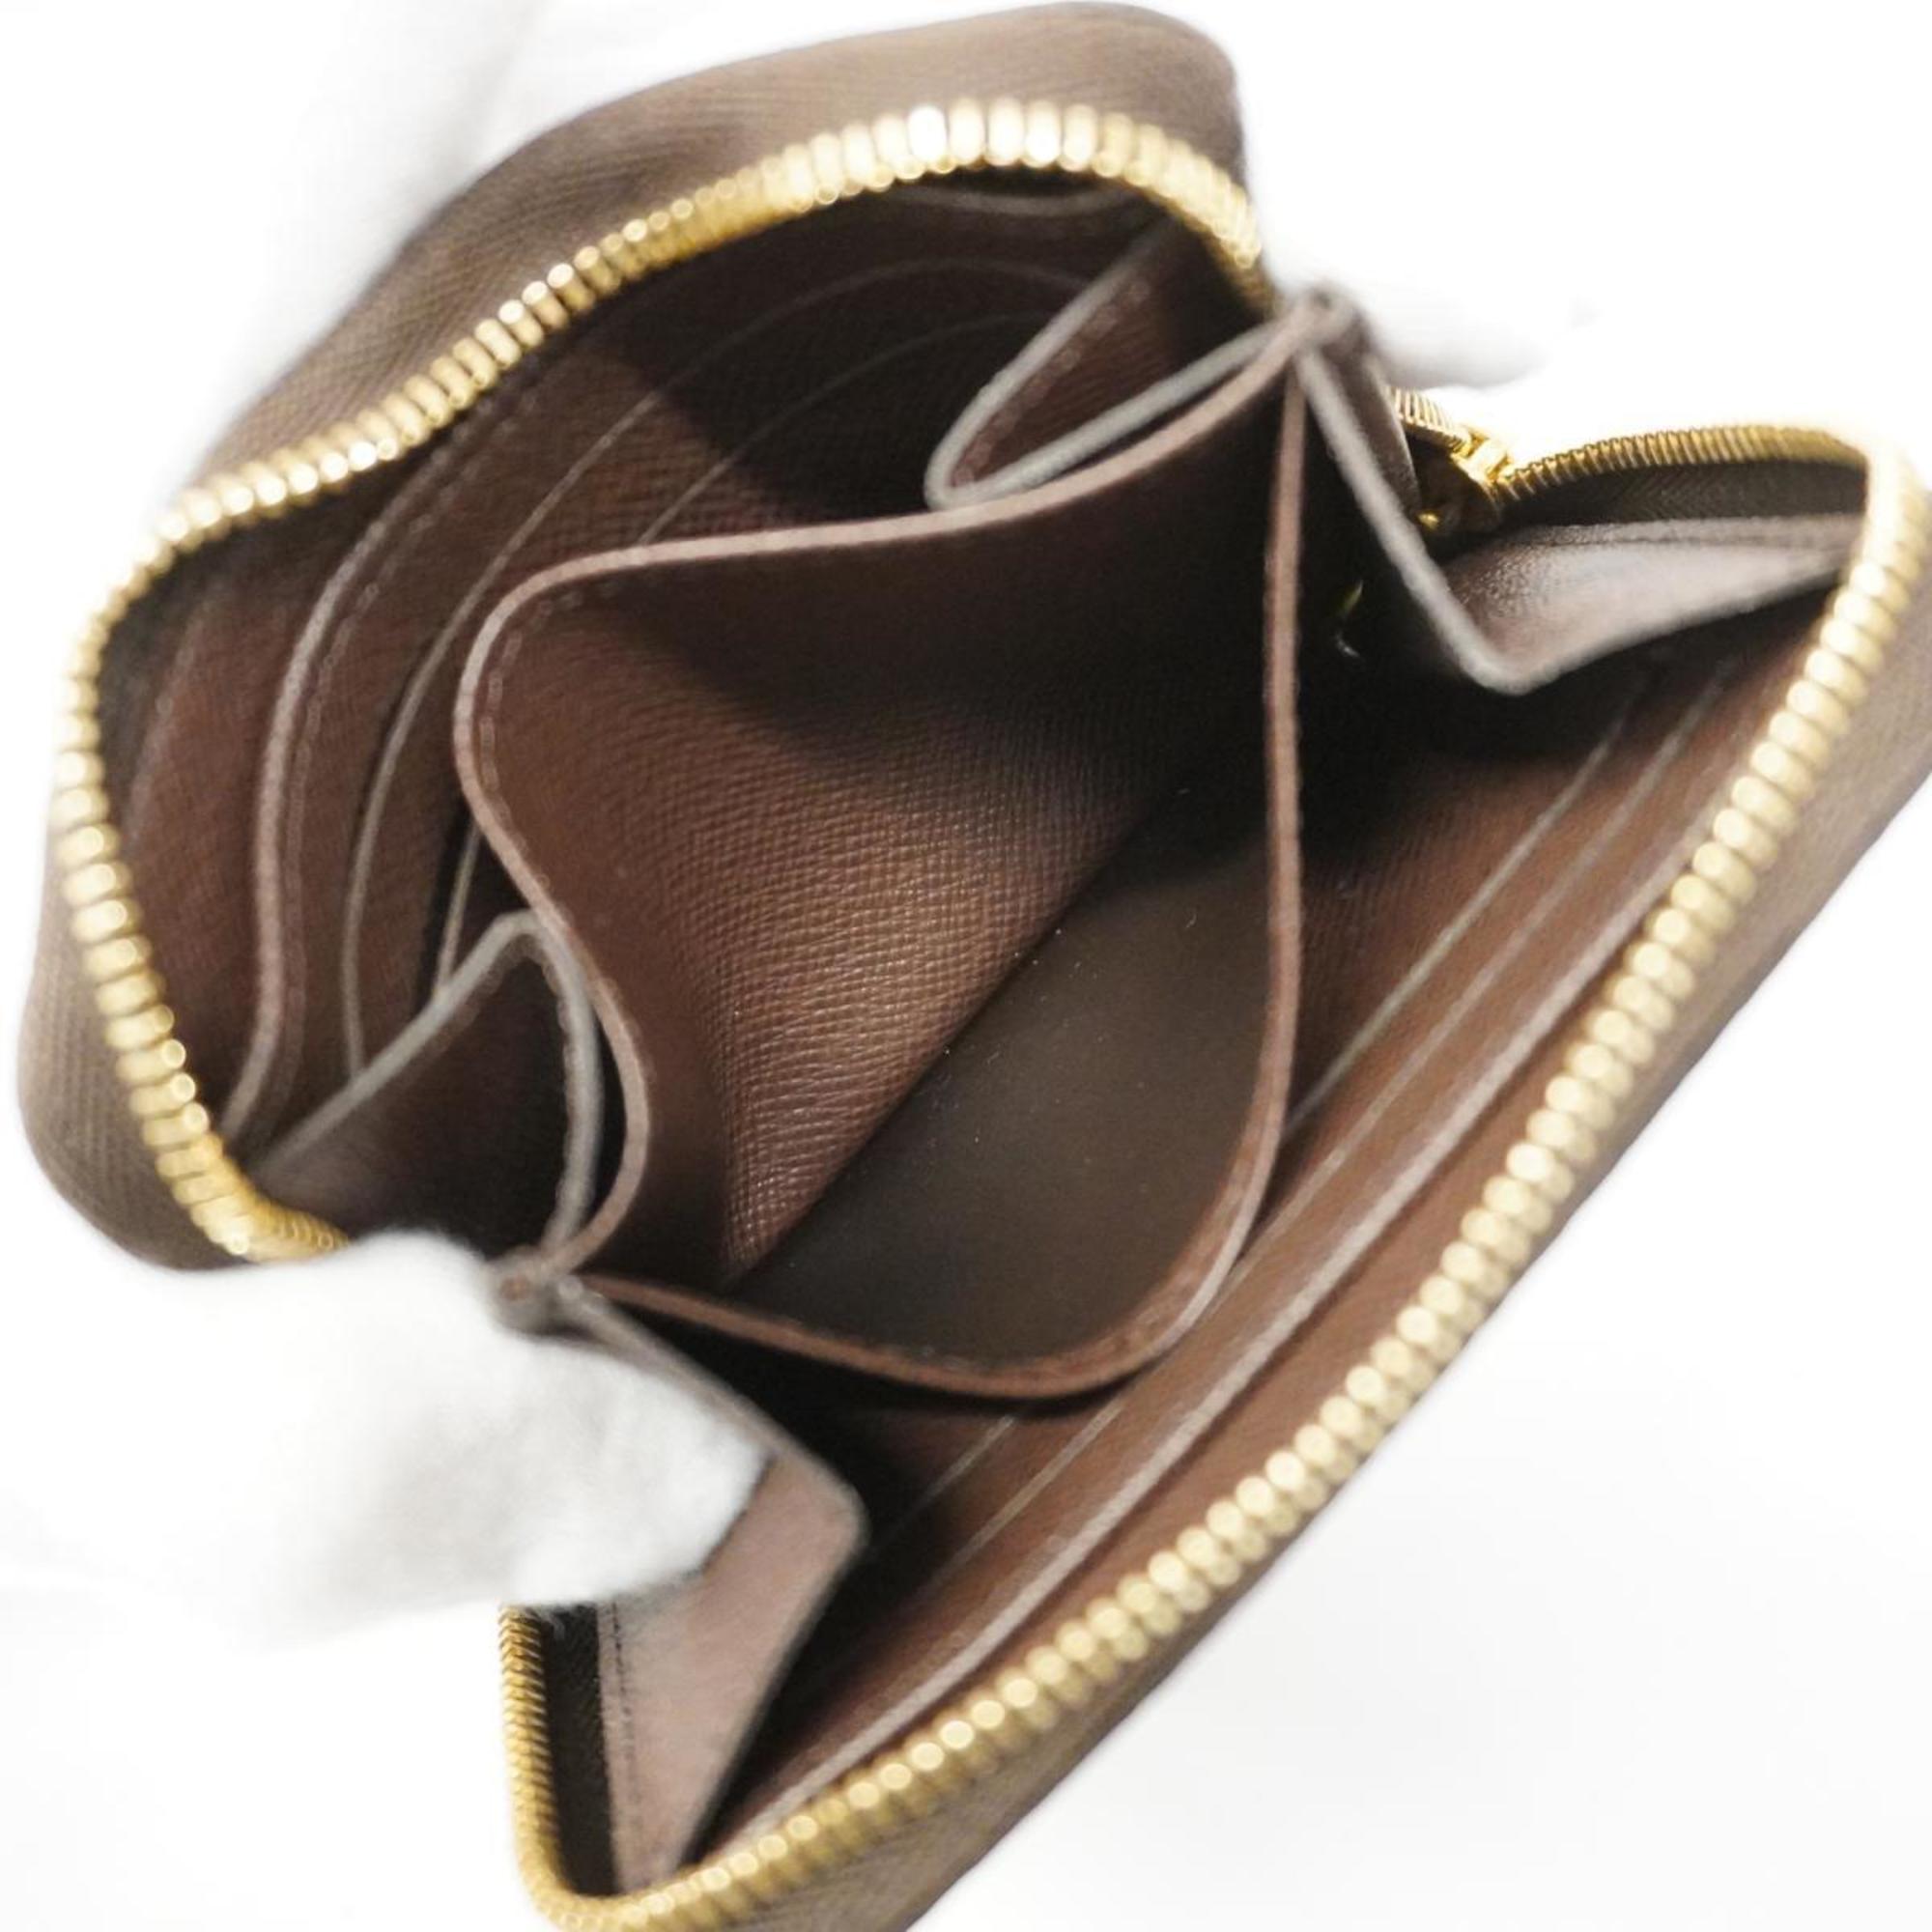 ルイ・ヴィトン(Louis Vuitton) ルイ・ヴィトン 財布・コインケース ダミエ ジッピーコインパース N63070 エベヌメンズ レディース